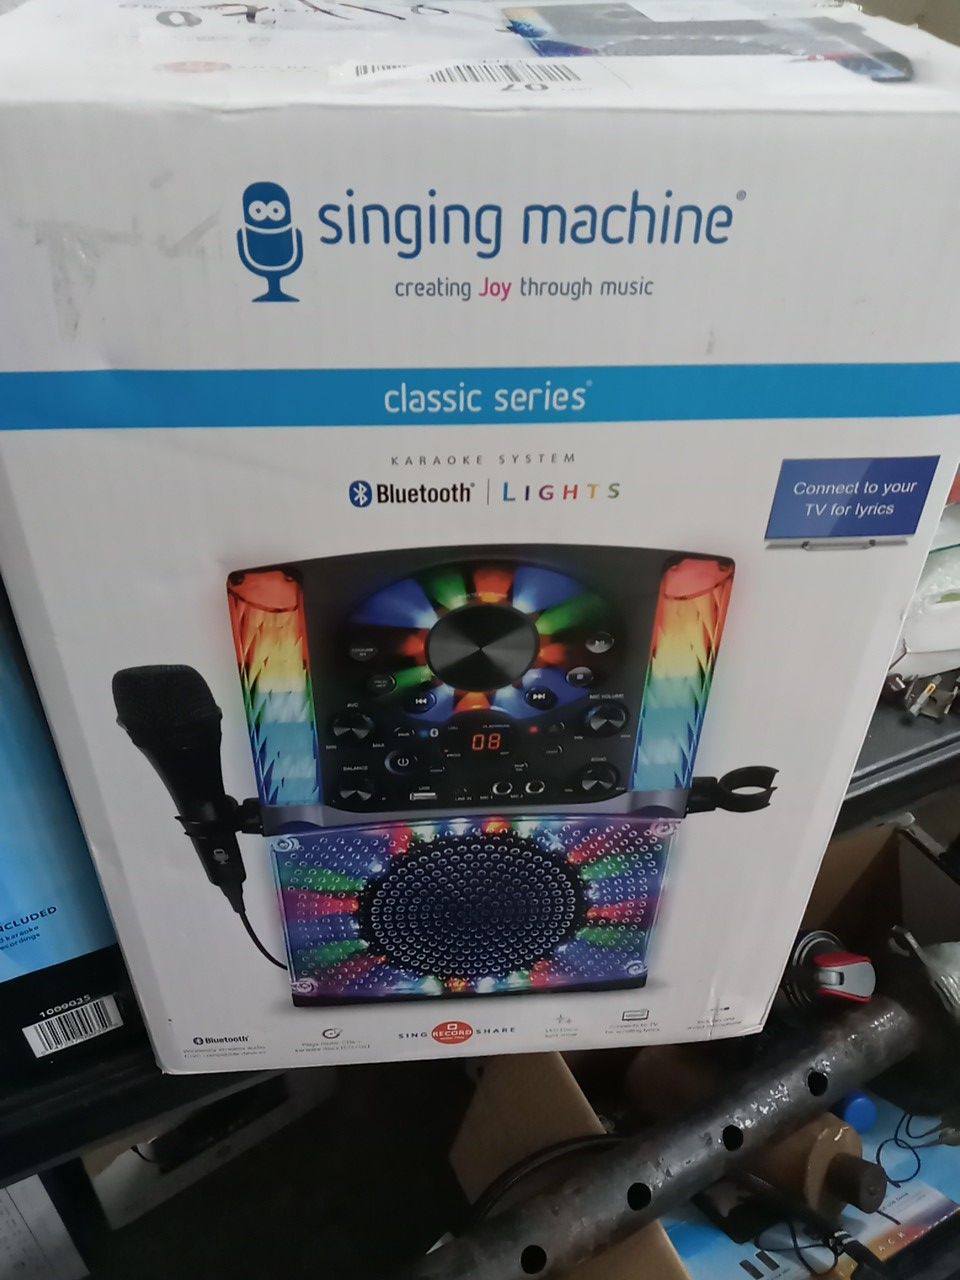 Singing machine